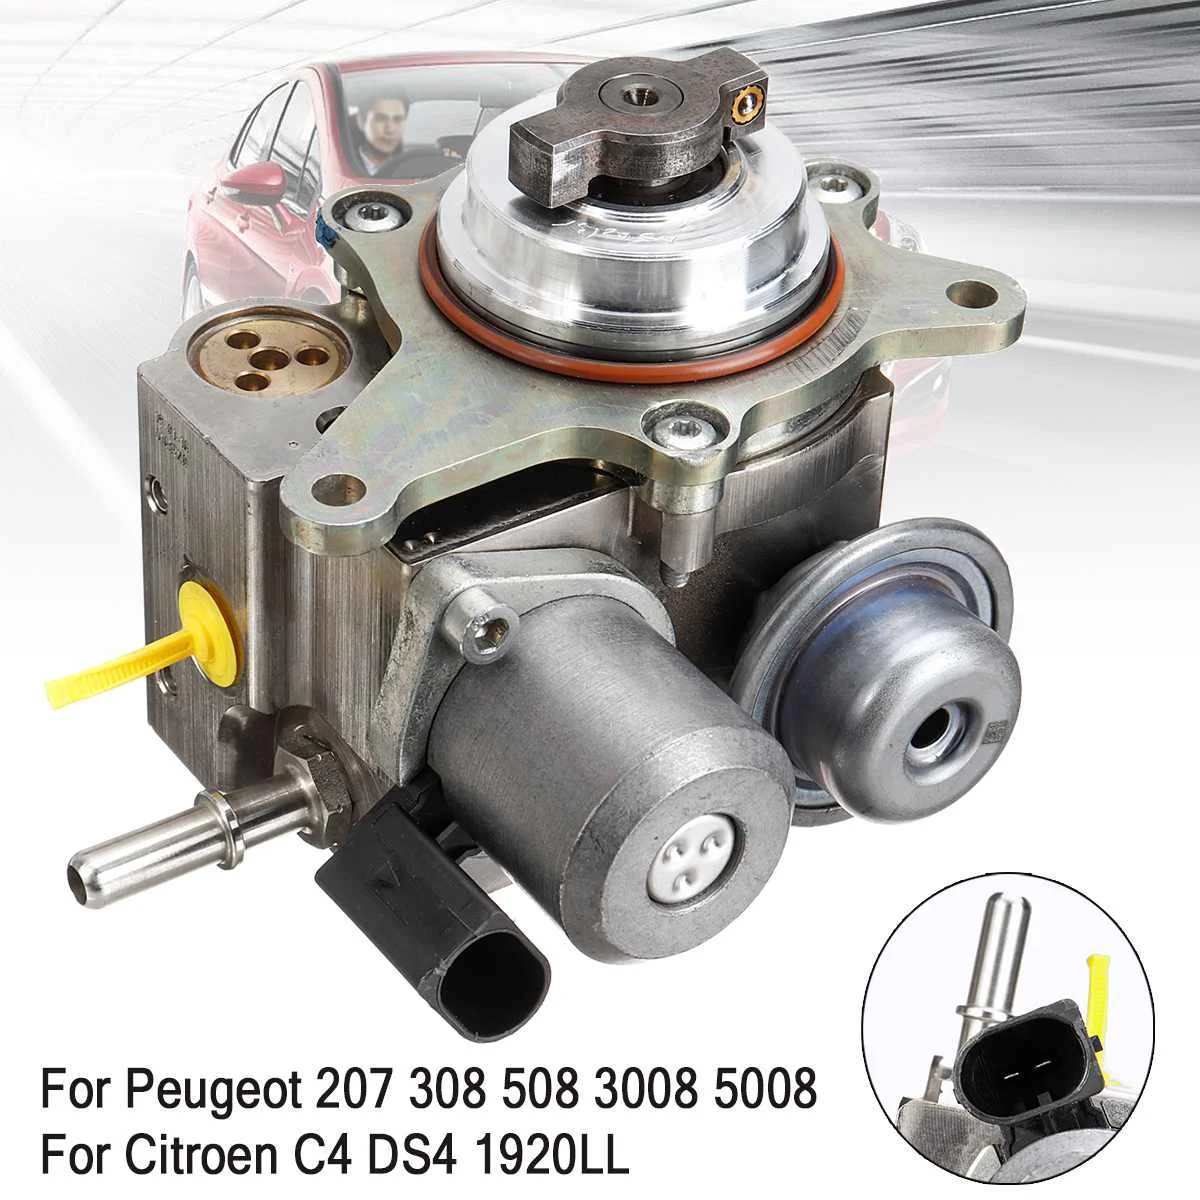 

Petrol Pressure Fuel Pump for Peugeot 207 308 3008 5008 508 1.6T Mini R55 R56 R57 R58 Cooper CITROEN C4 9819938480 13537528345